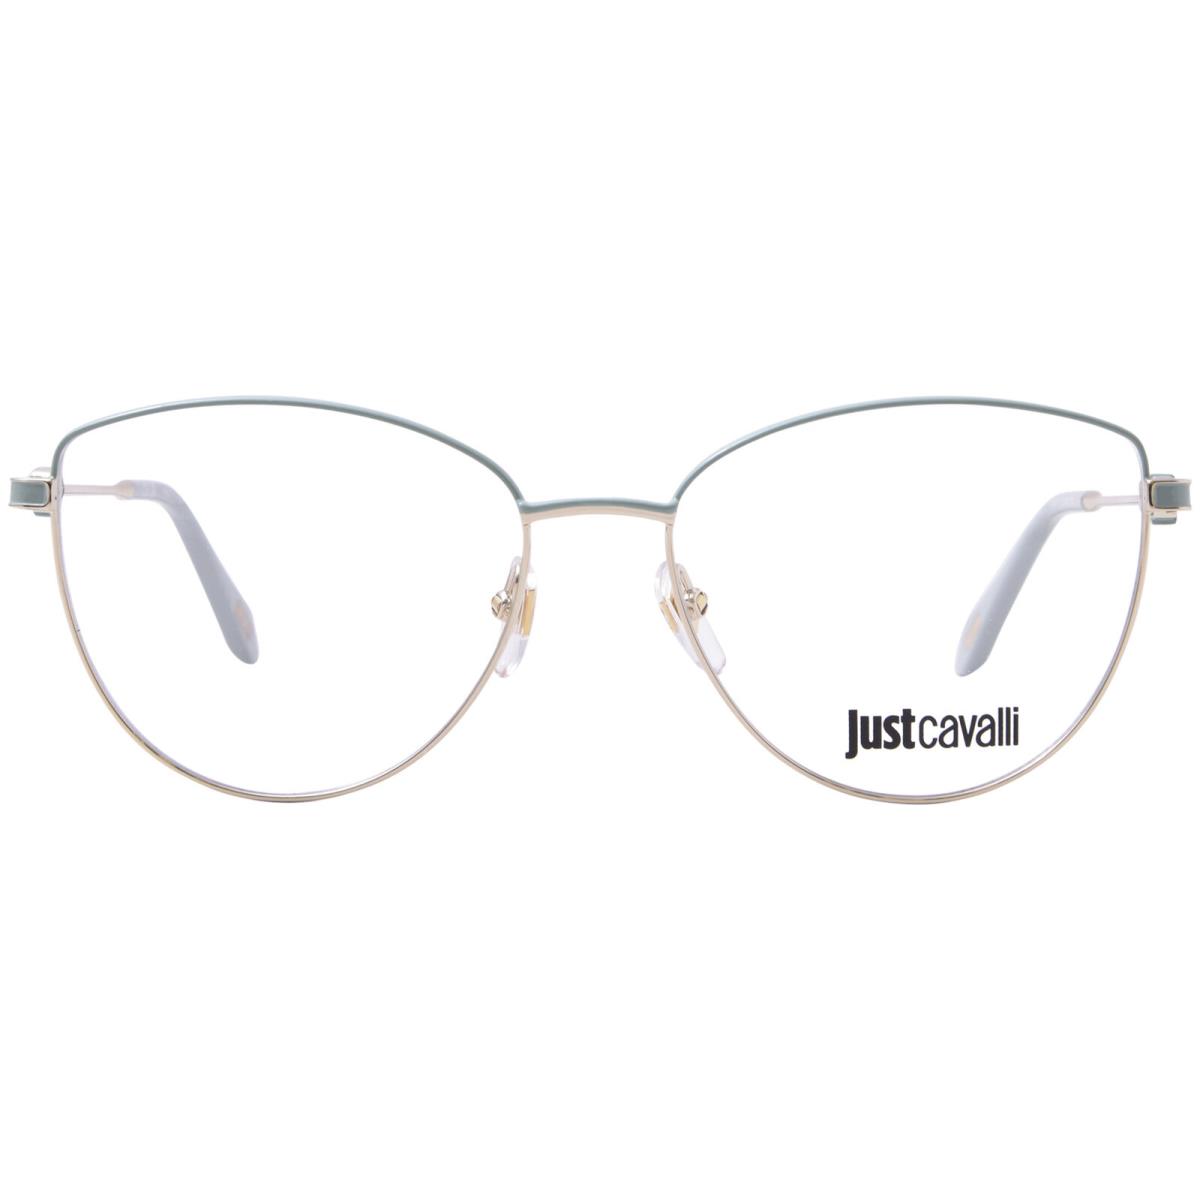 Just Cavalli VJC014 0492 Eyeglasses Frame Women`s Light Gold/color Full Rim 54mm